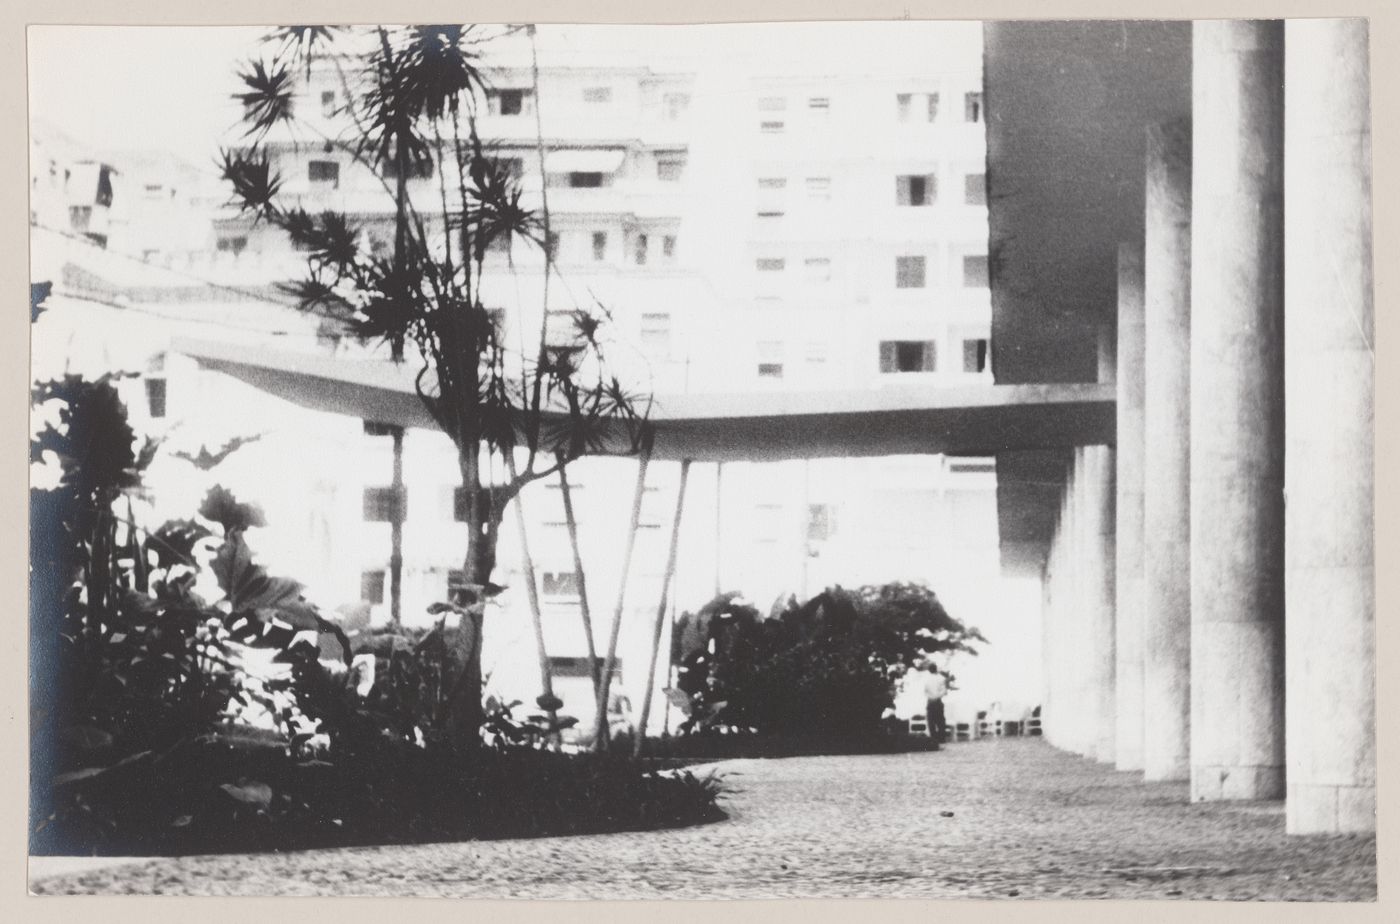 View of Eduardo Guinle Park housing, Rio de Janeiro, Brazil
